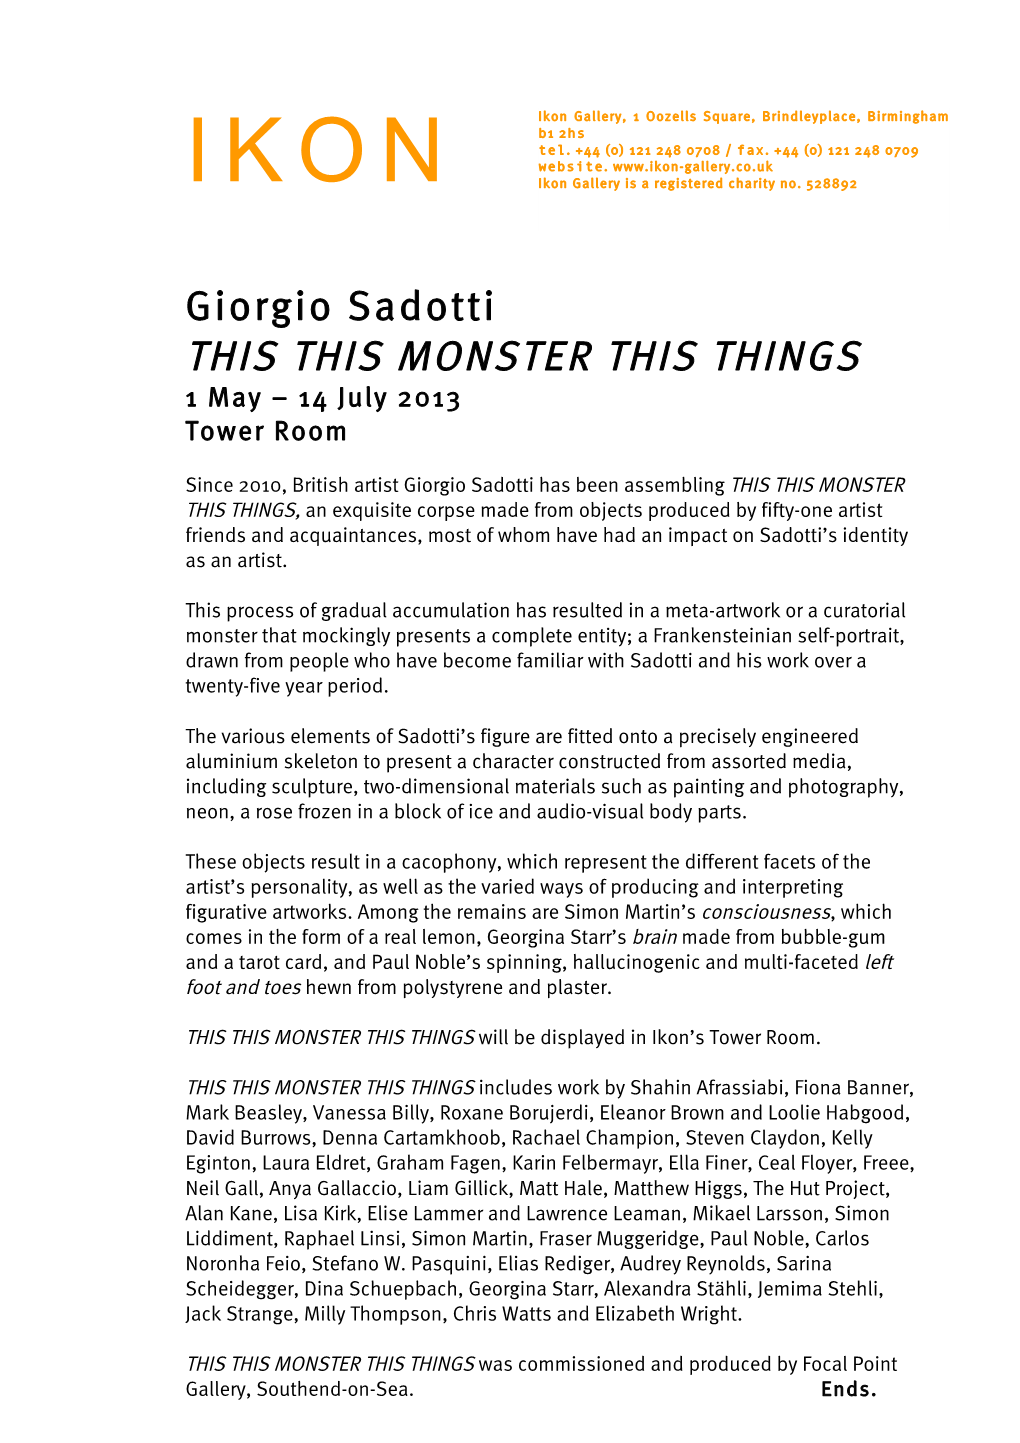 Giorgio Sadotti – Monster